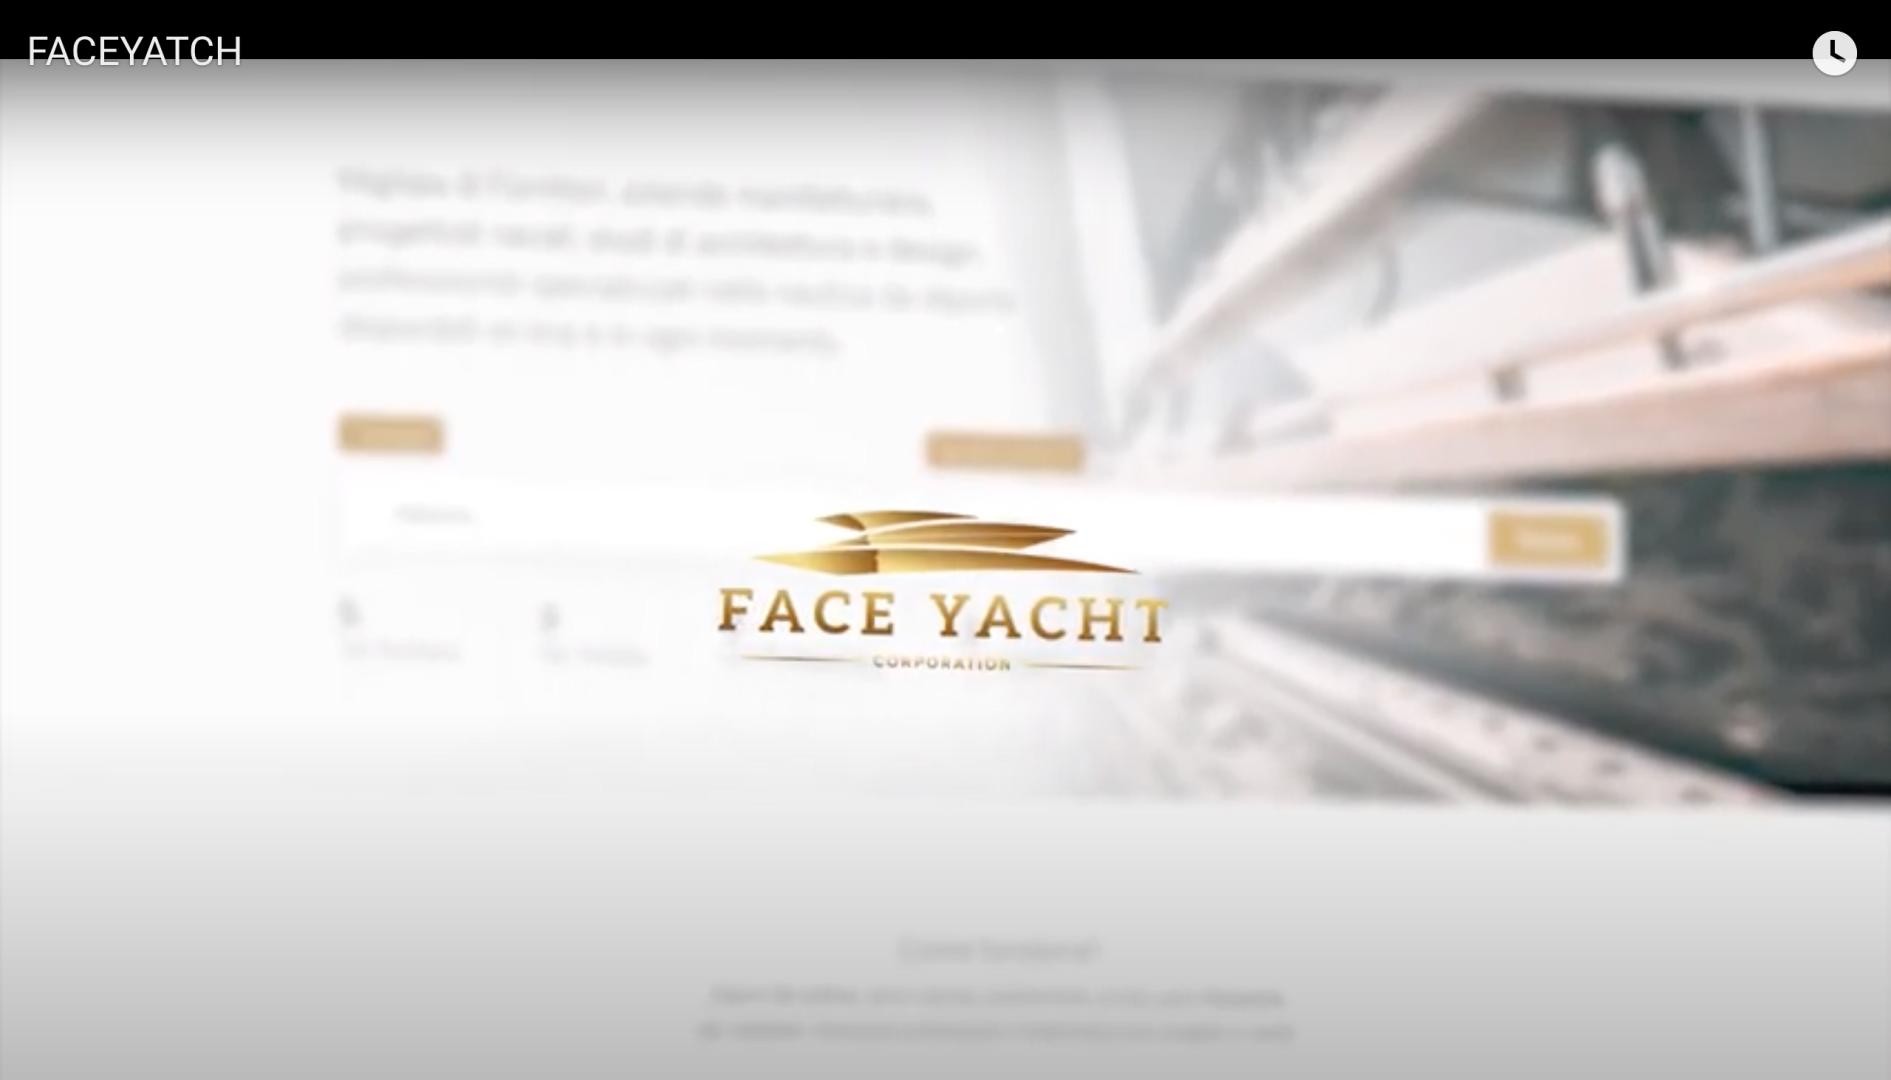 Face Yacht, cresce il social network dedicato al mondo della nautica